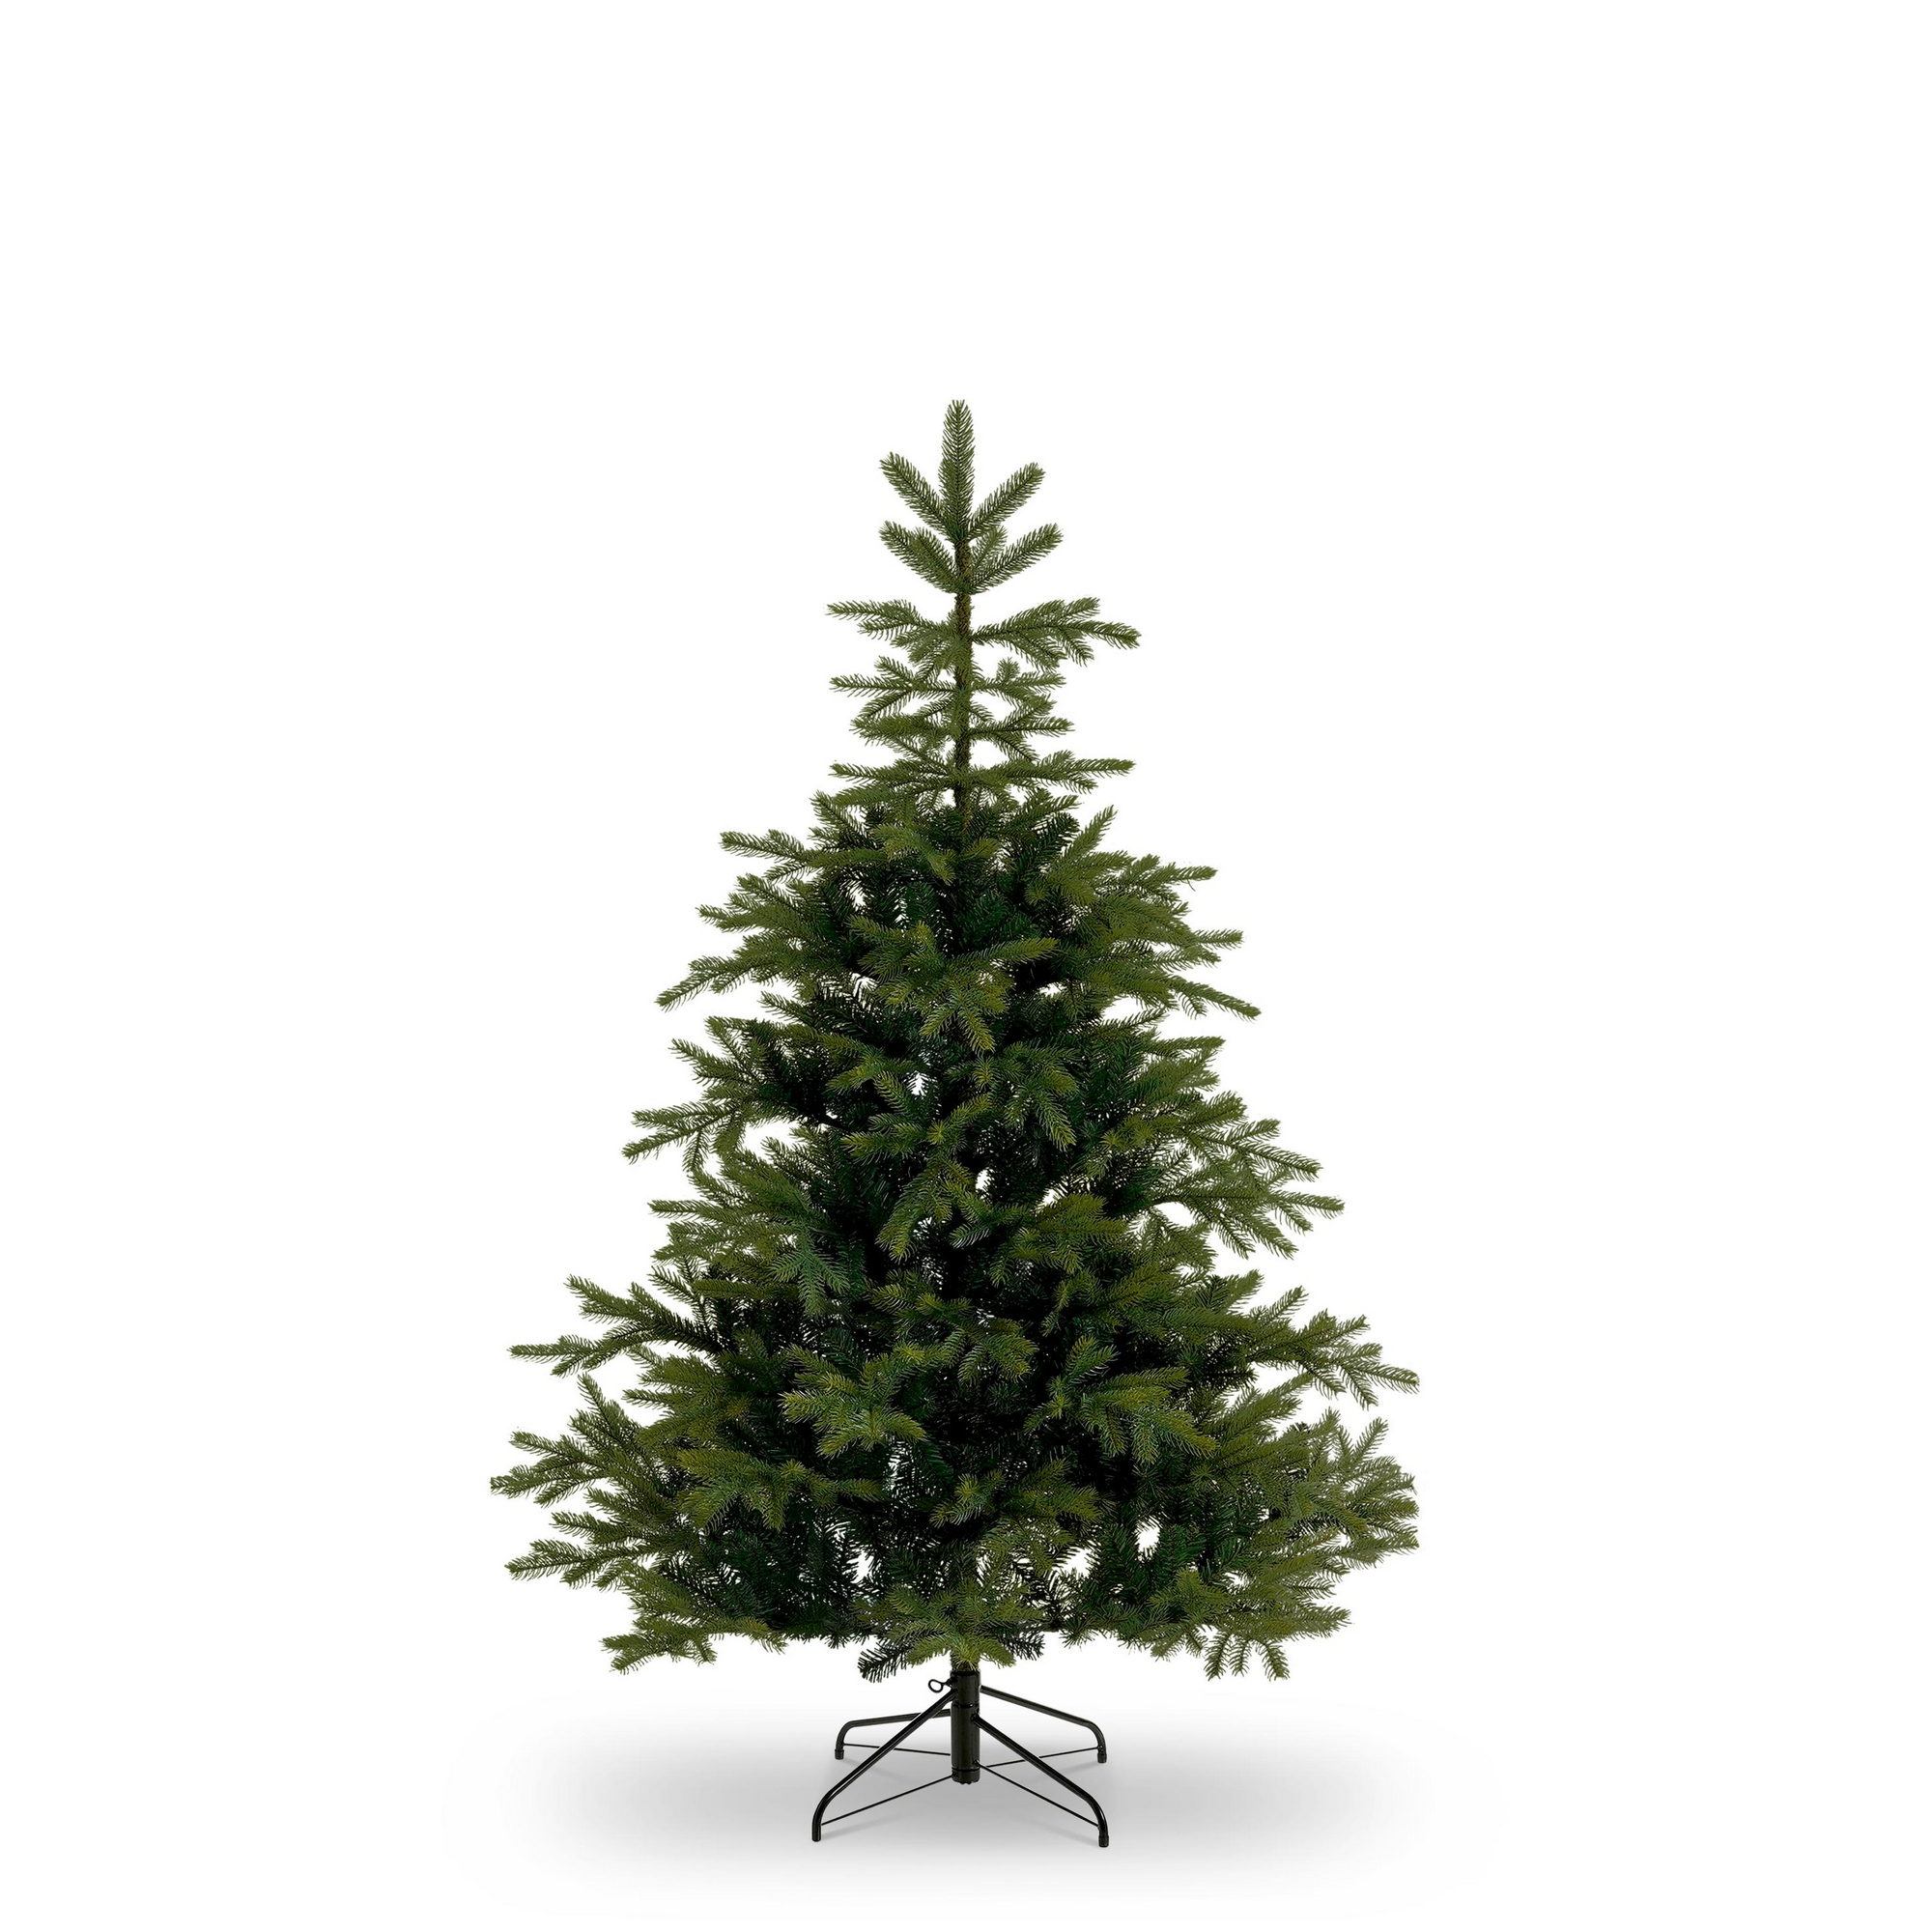 Künstlicher Weihnachtsbaum 'Fernie' grün inklusive Ständer 185 cm + product picture